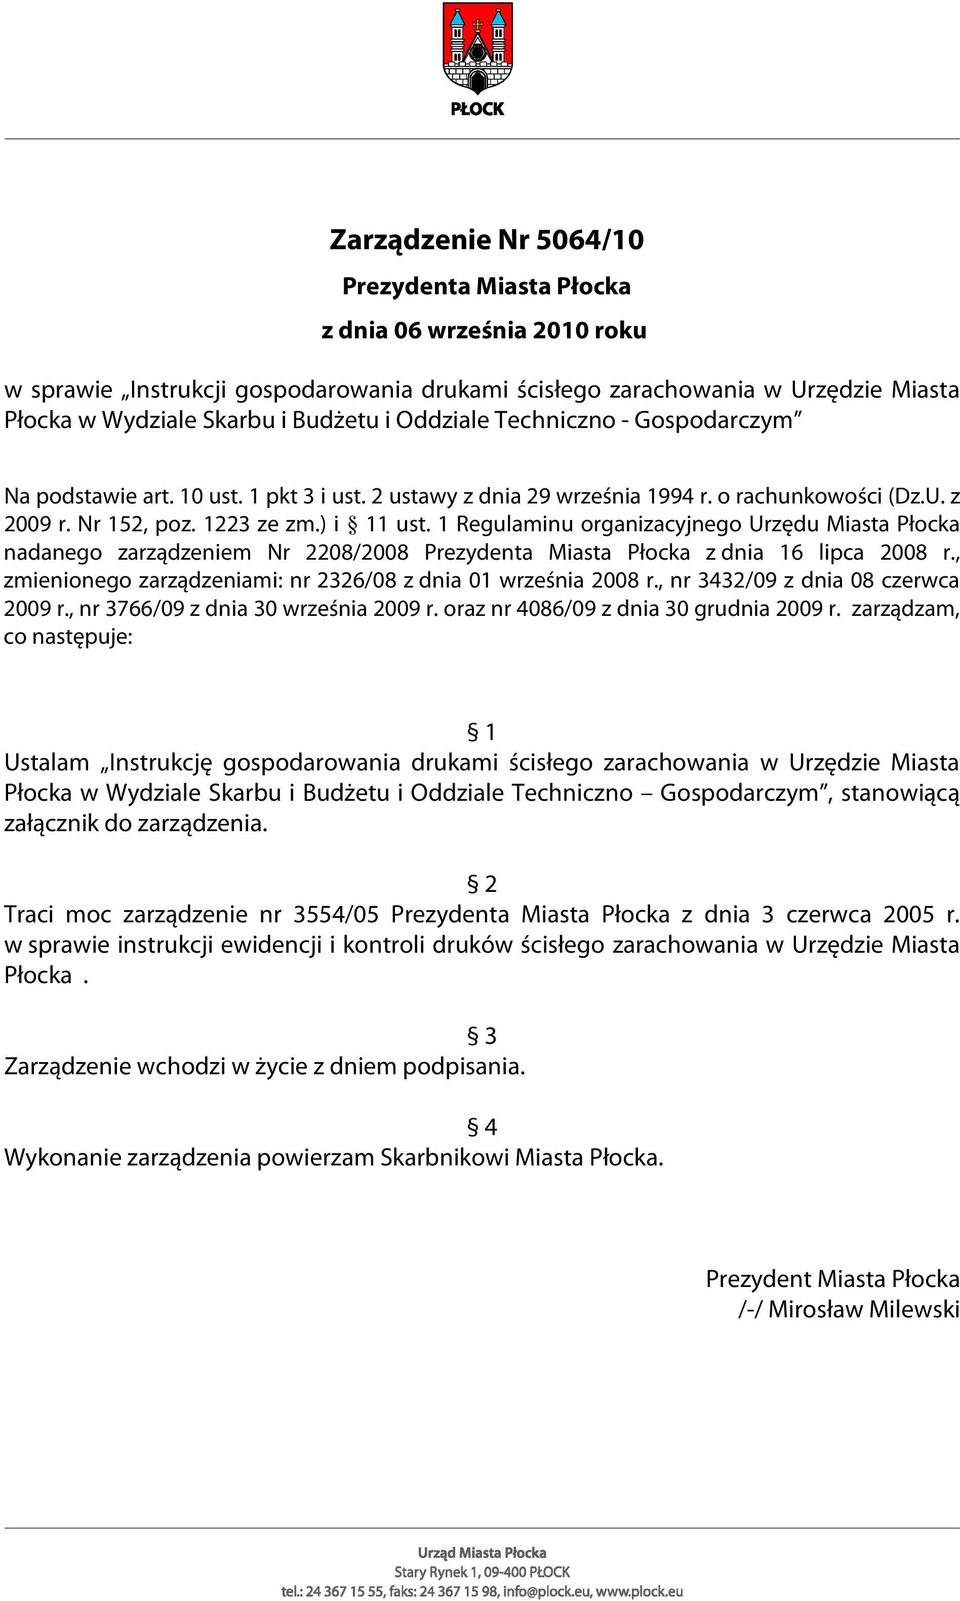 1 Regulaminu organizacyjnego Urzędu Miasta Płocka nadanego zarządzeniem Nr 2208/2008 Prezydenta Miasta Płocka z dnia 16 lipca 2008 r., zmienionego zarządzeniami: nr 2326/08 z dnia 01 września 2008 r.